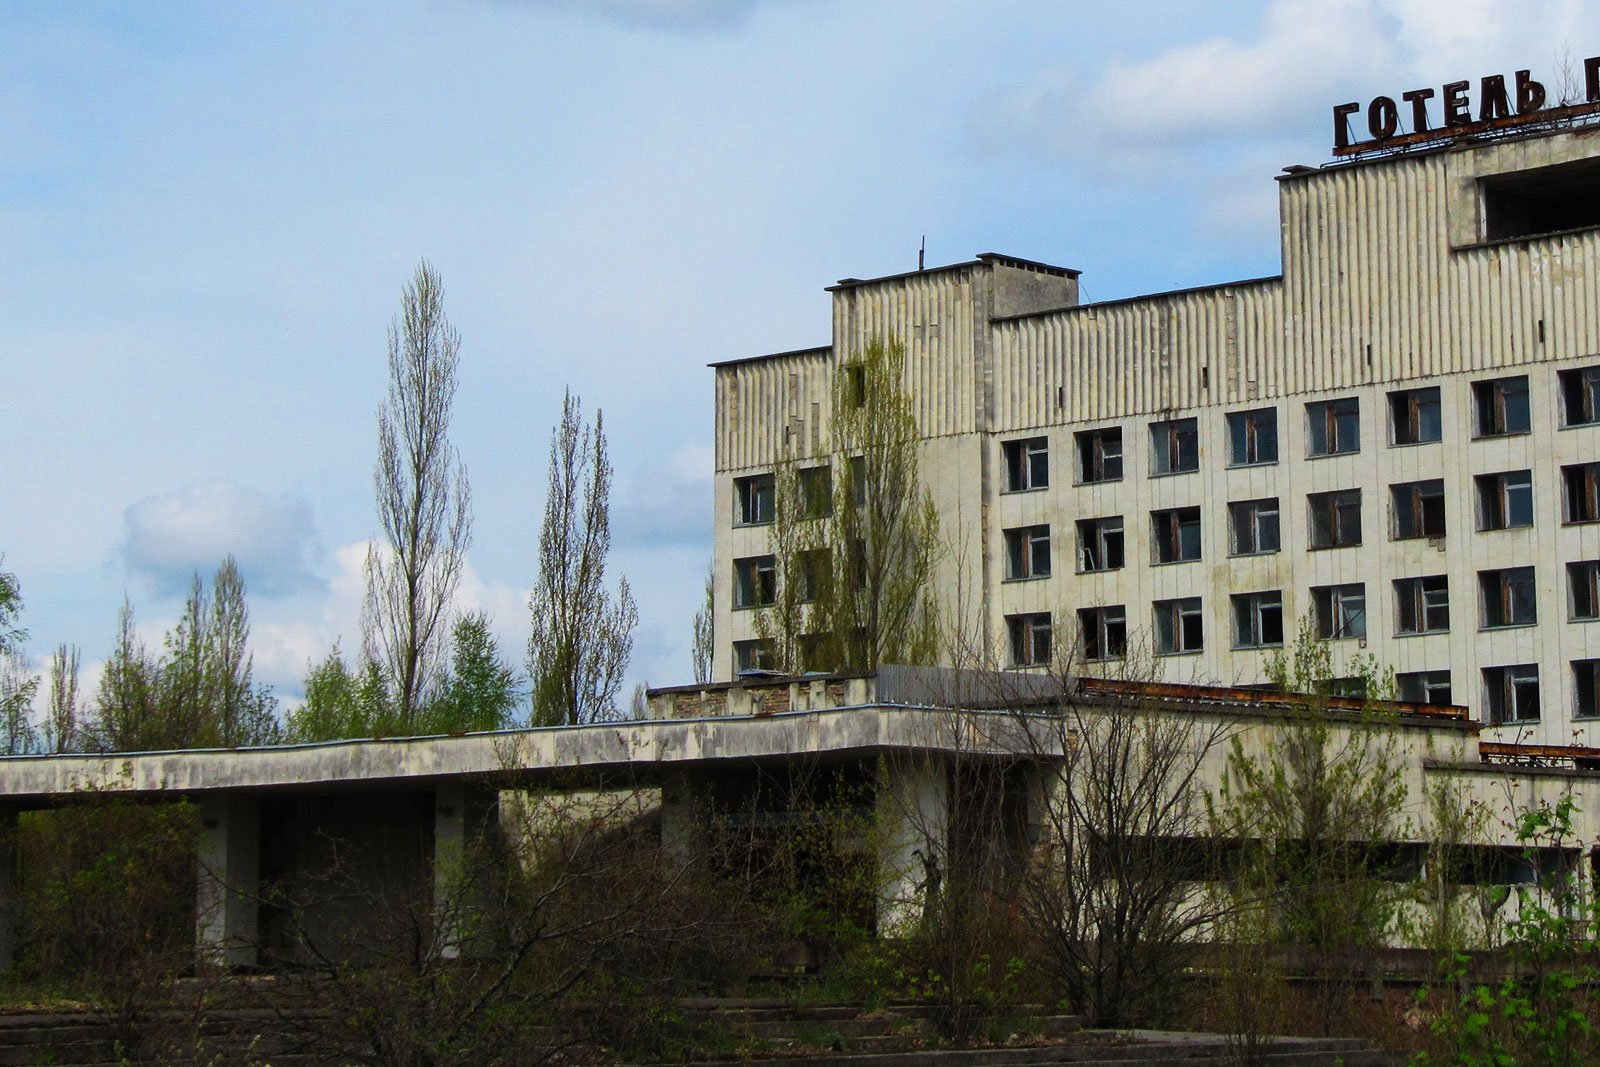 Polissya Hotel, Chernobyl